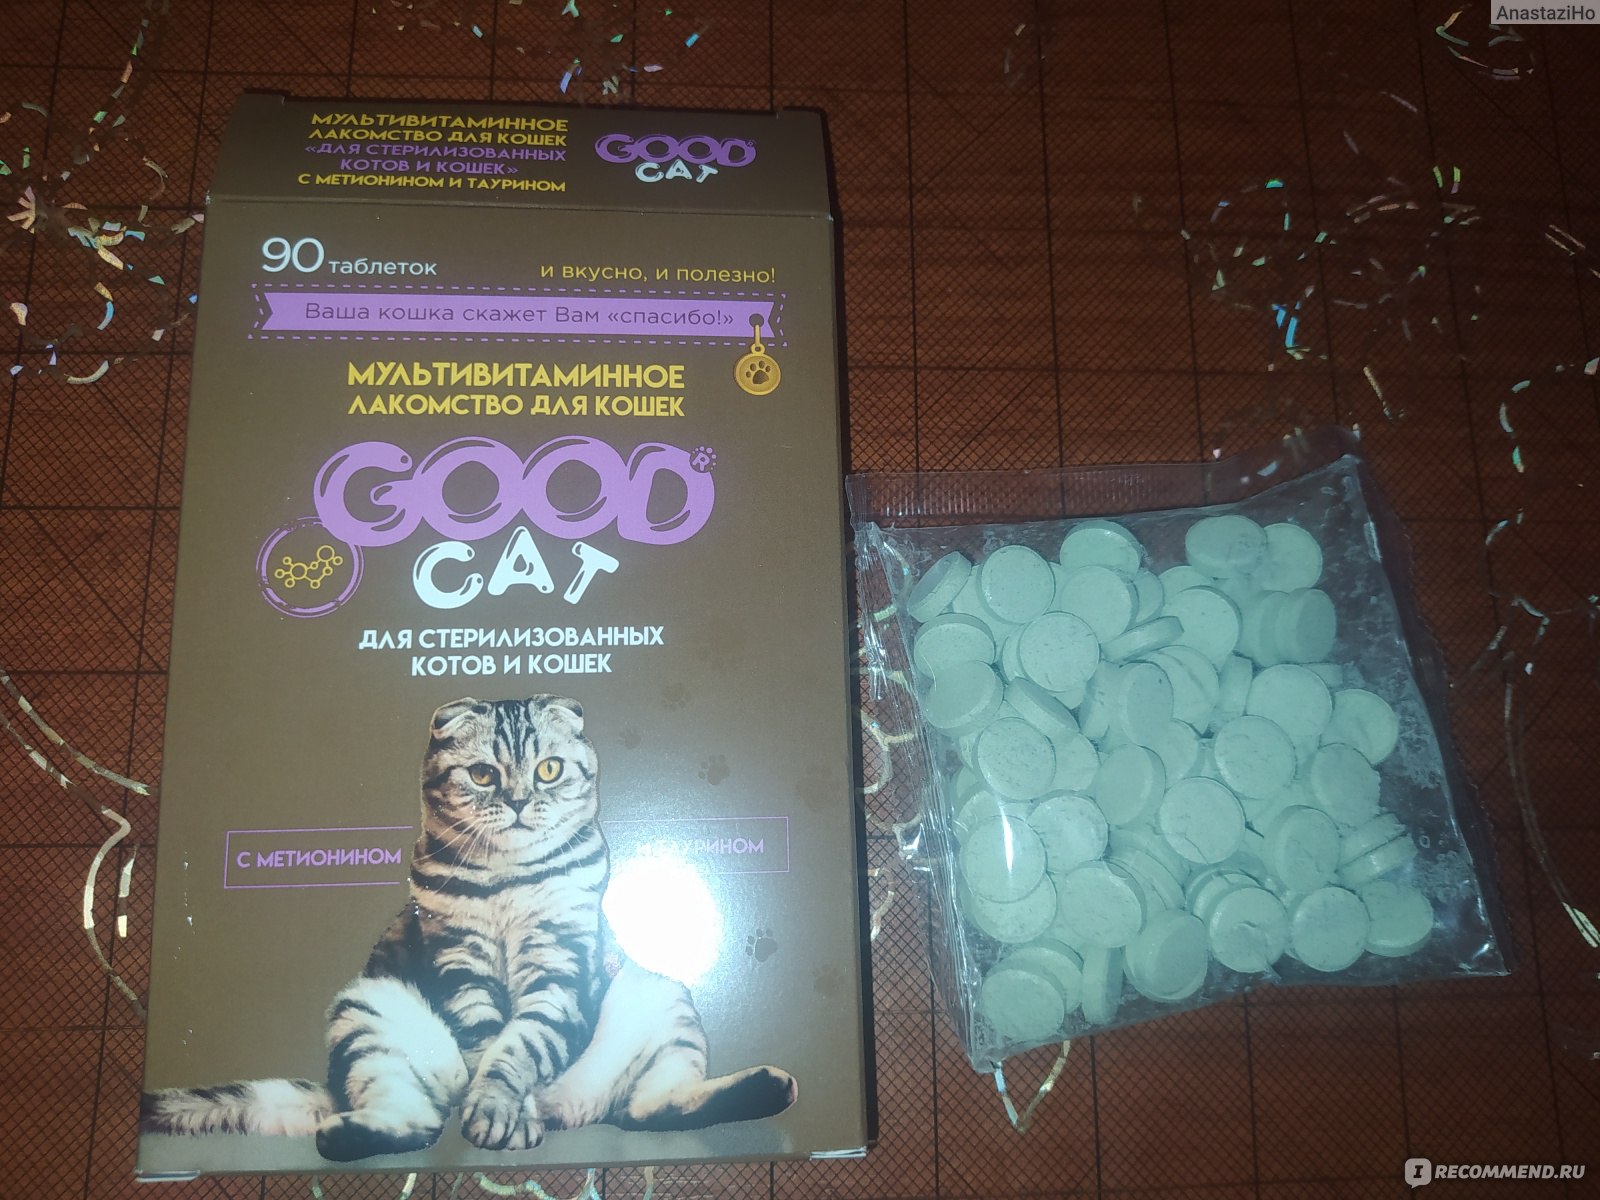 Витамины Good cat Мультивитаминное лакомство для стерилизованных котов и кошек фото